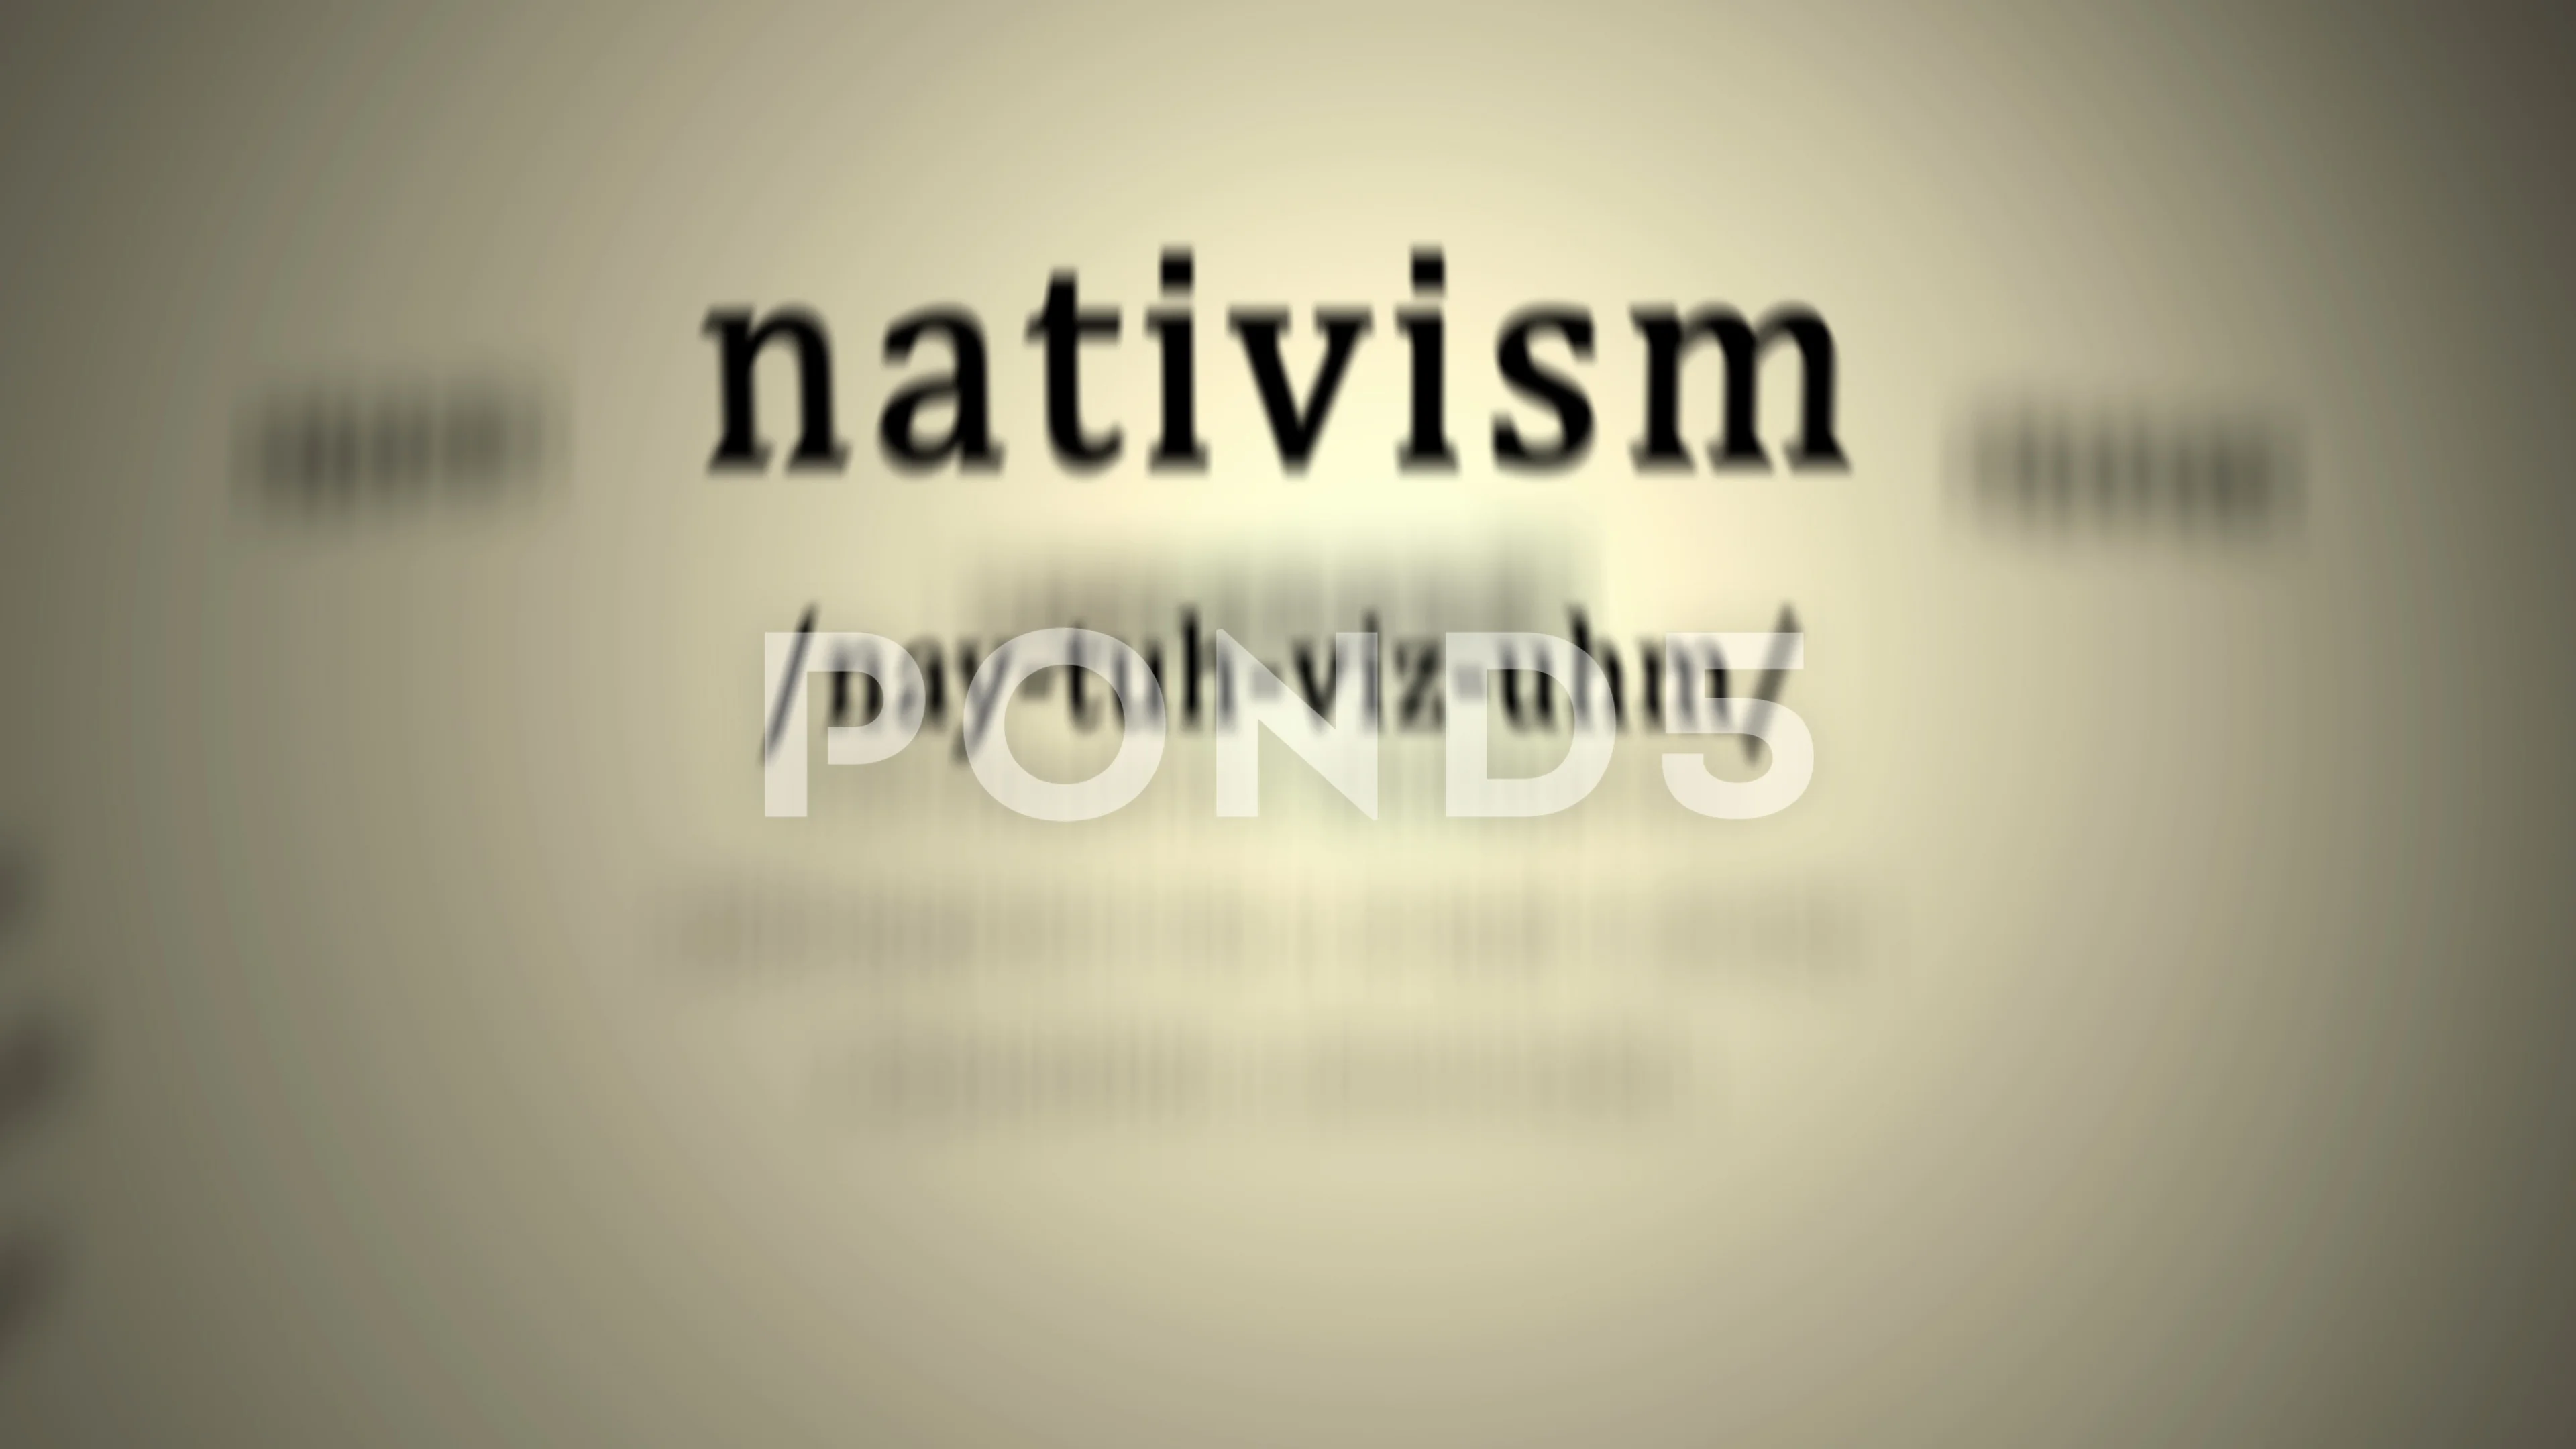 nativism definition